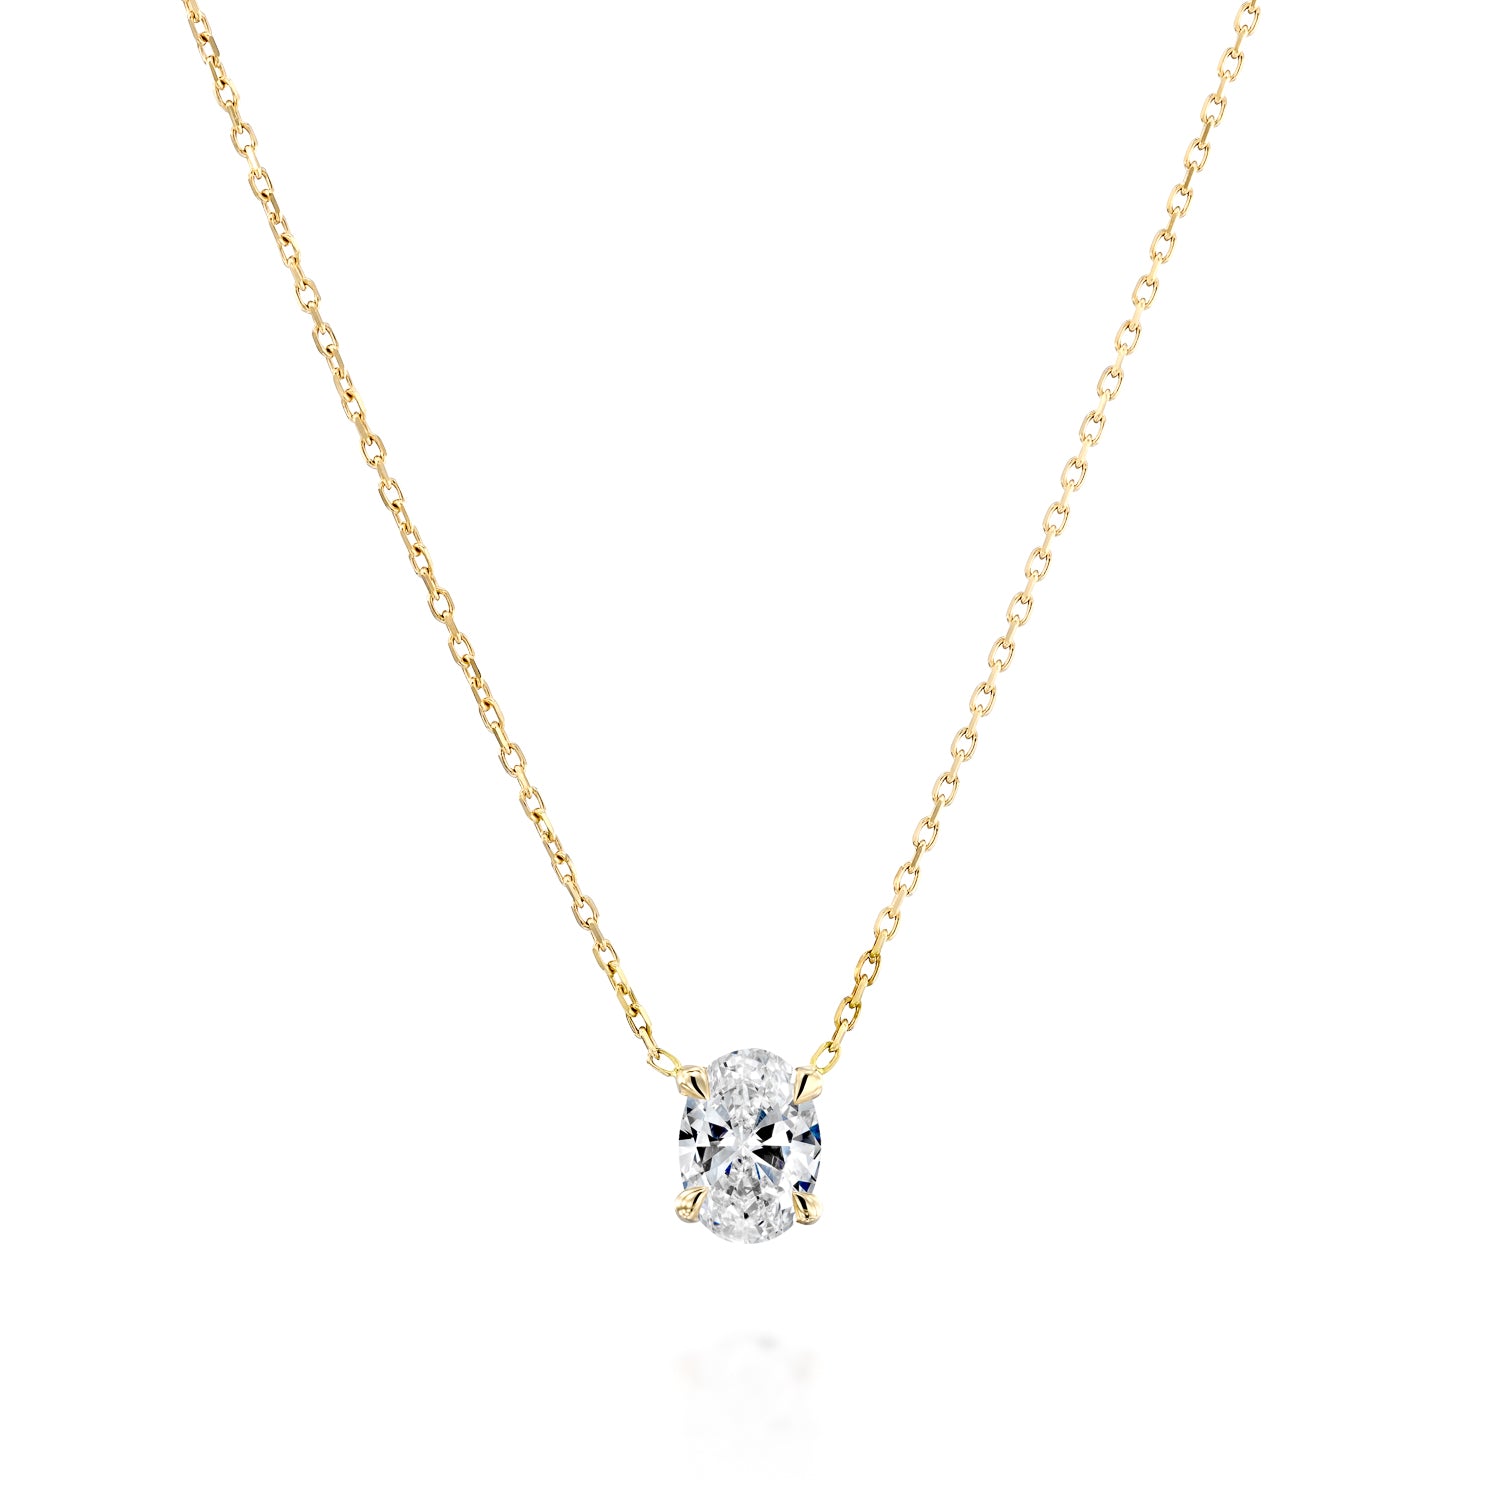 Oval Diamond Cut Necklace Gold 14K